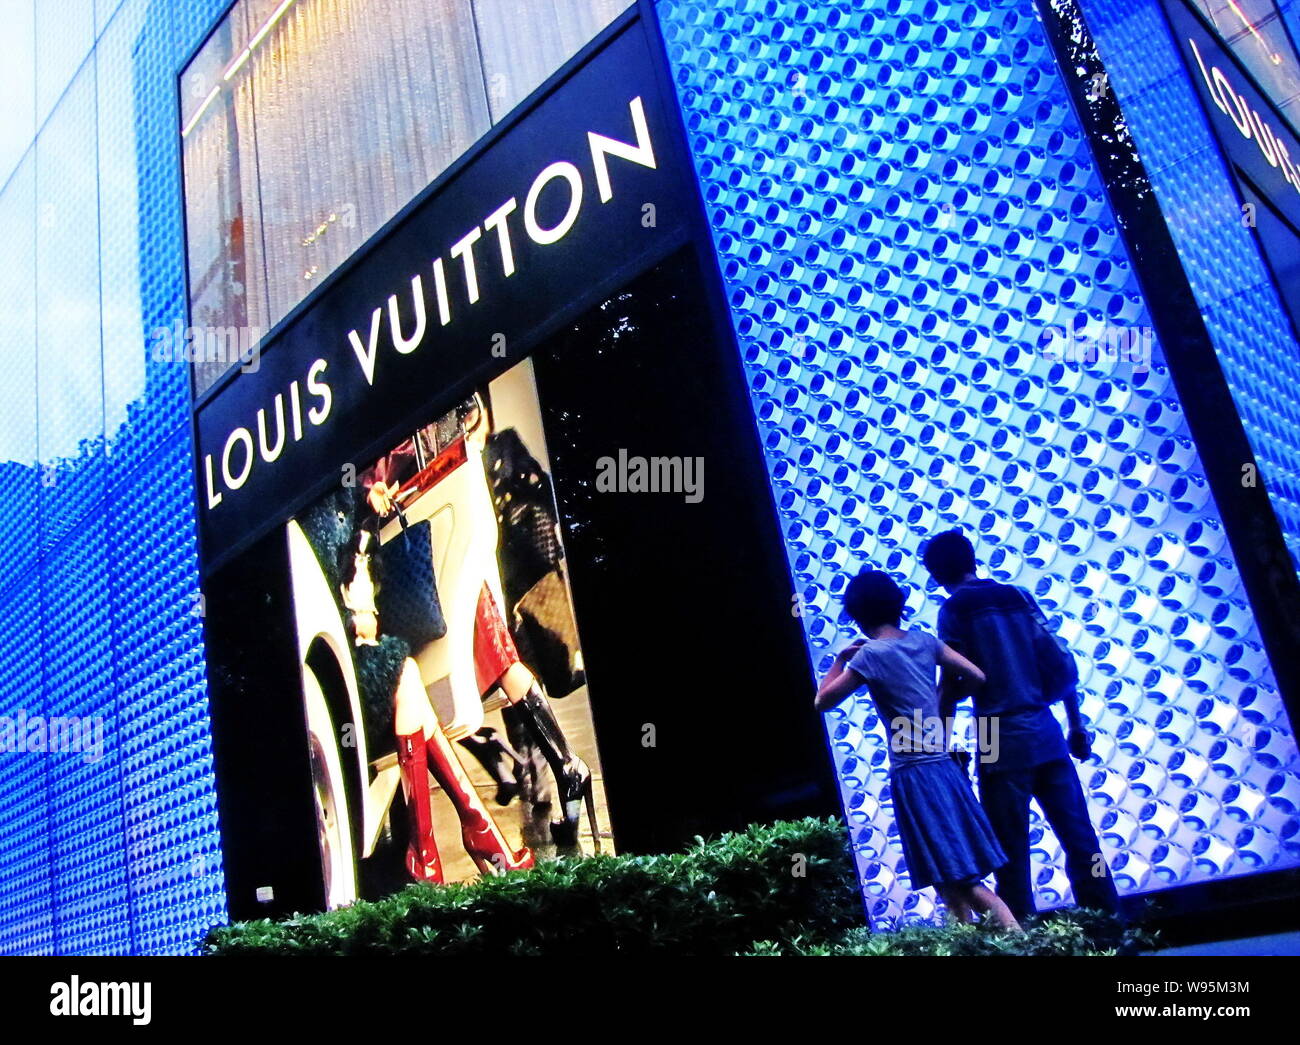 Vuitton Stock Illustrations – 156 Vuitton Stock Illustrations